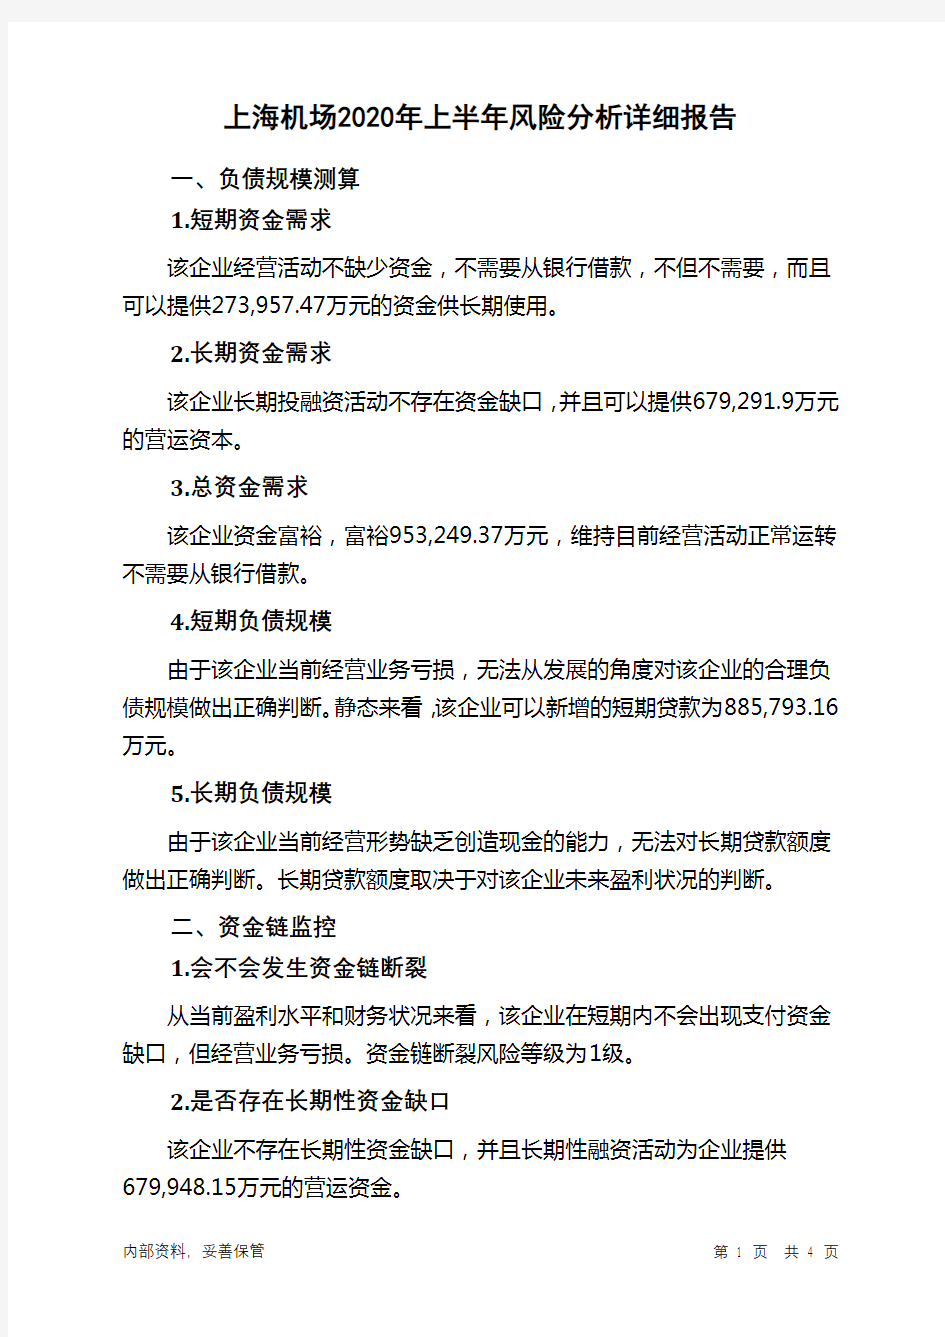 上海机场2020年上半年财务风险分析详细报告